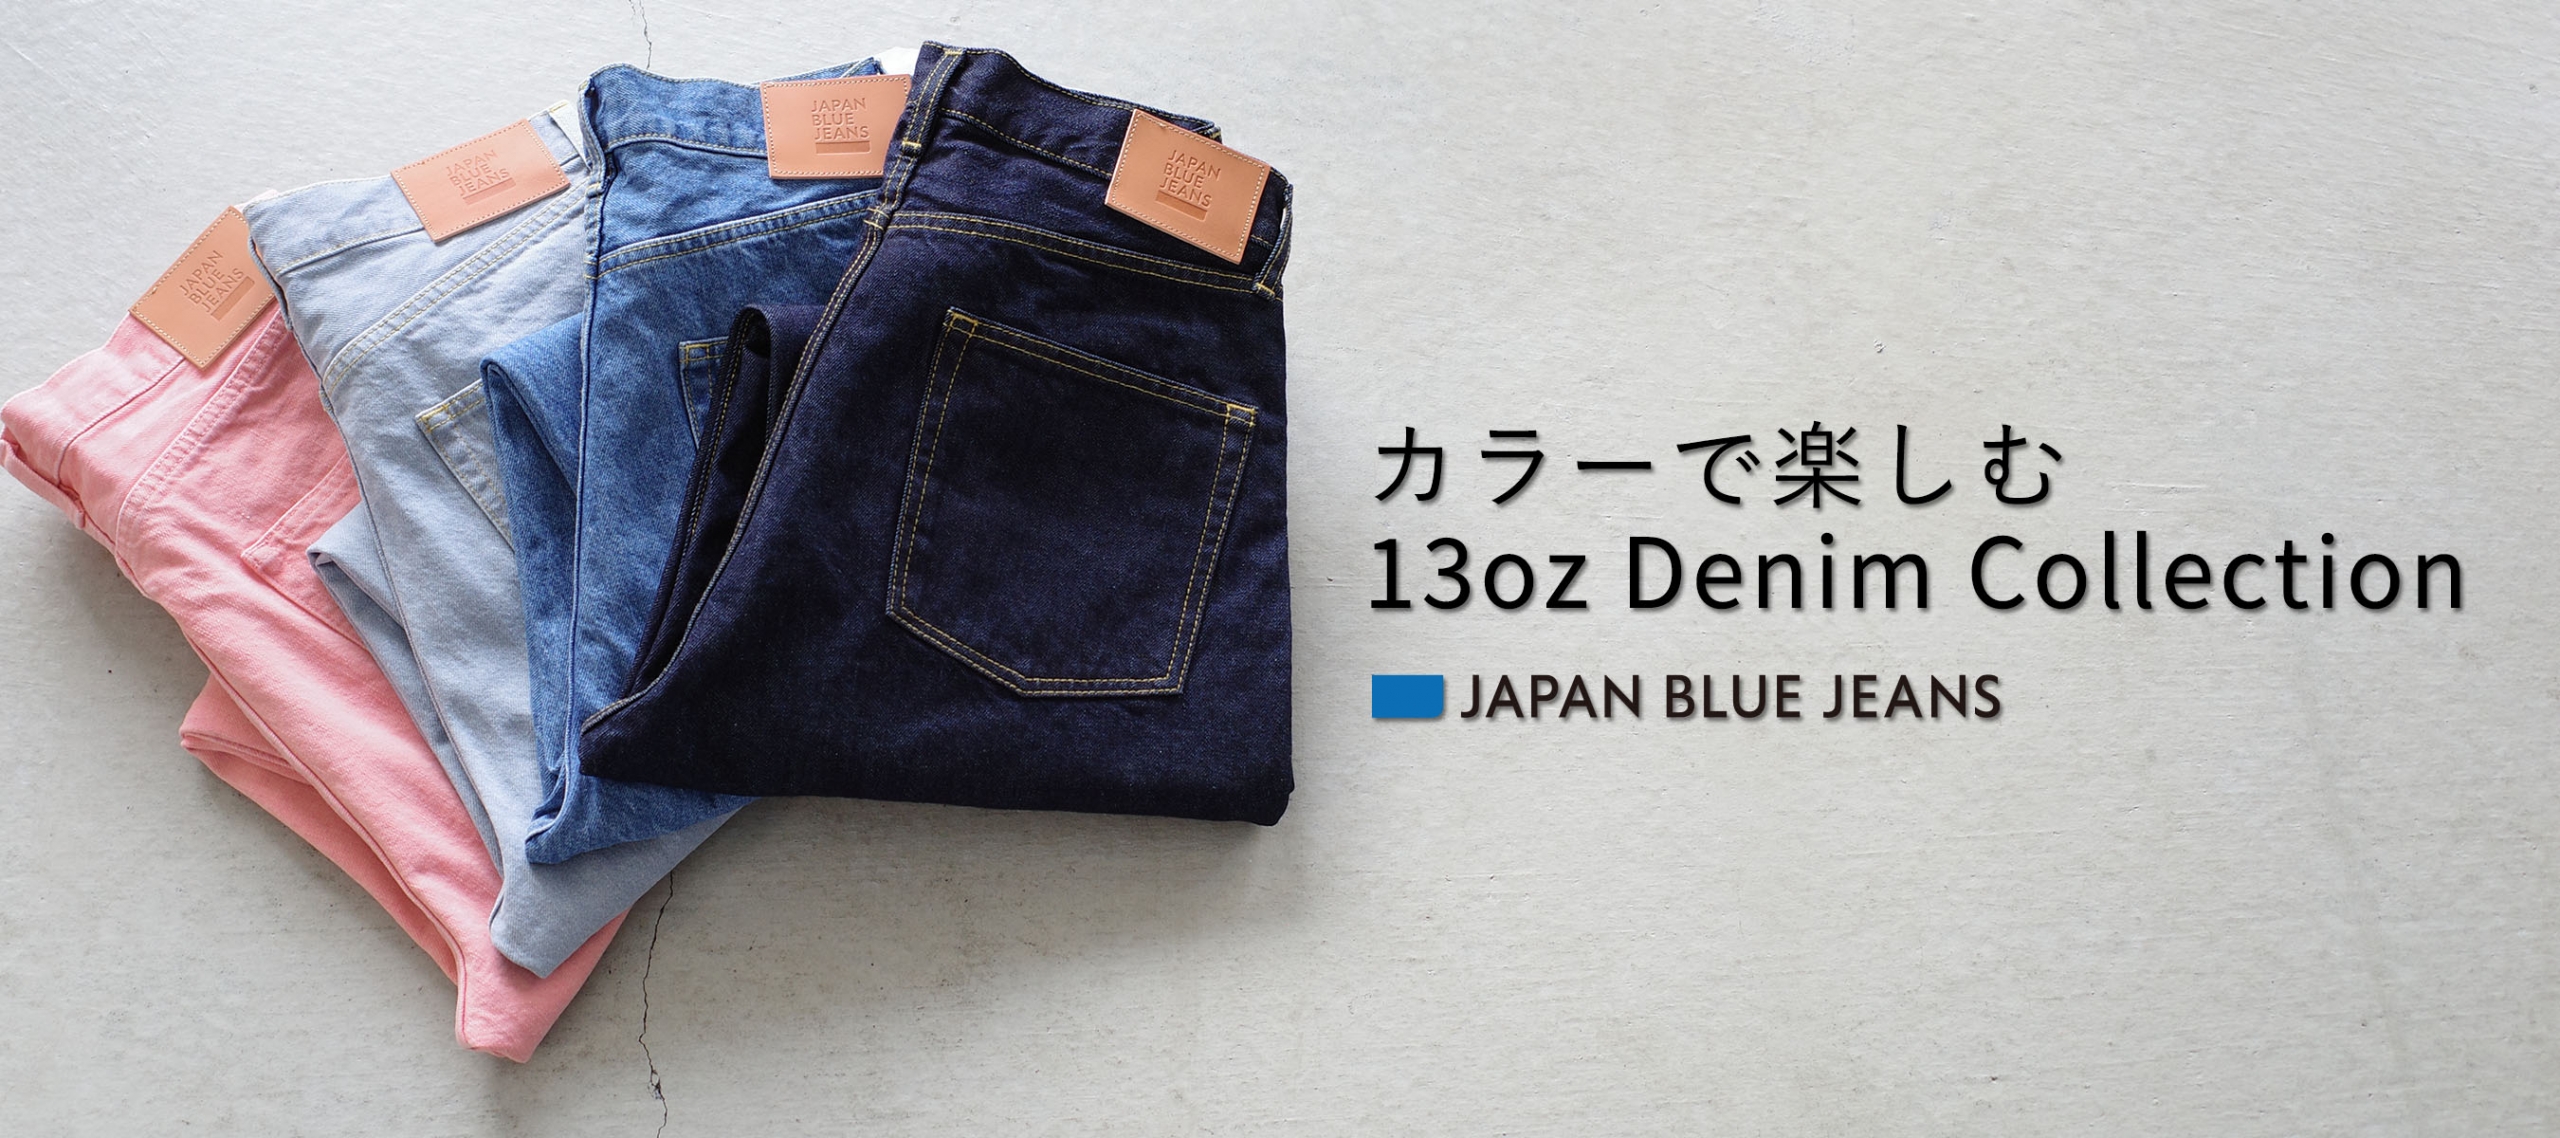 JAPAN BLUE JEANS,24SS 13oz Denim Collection